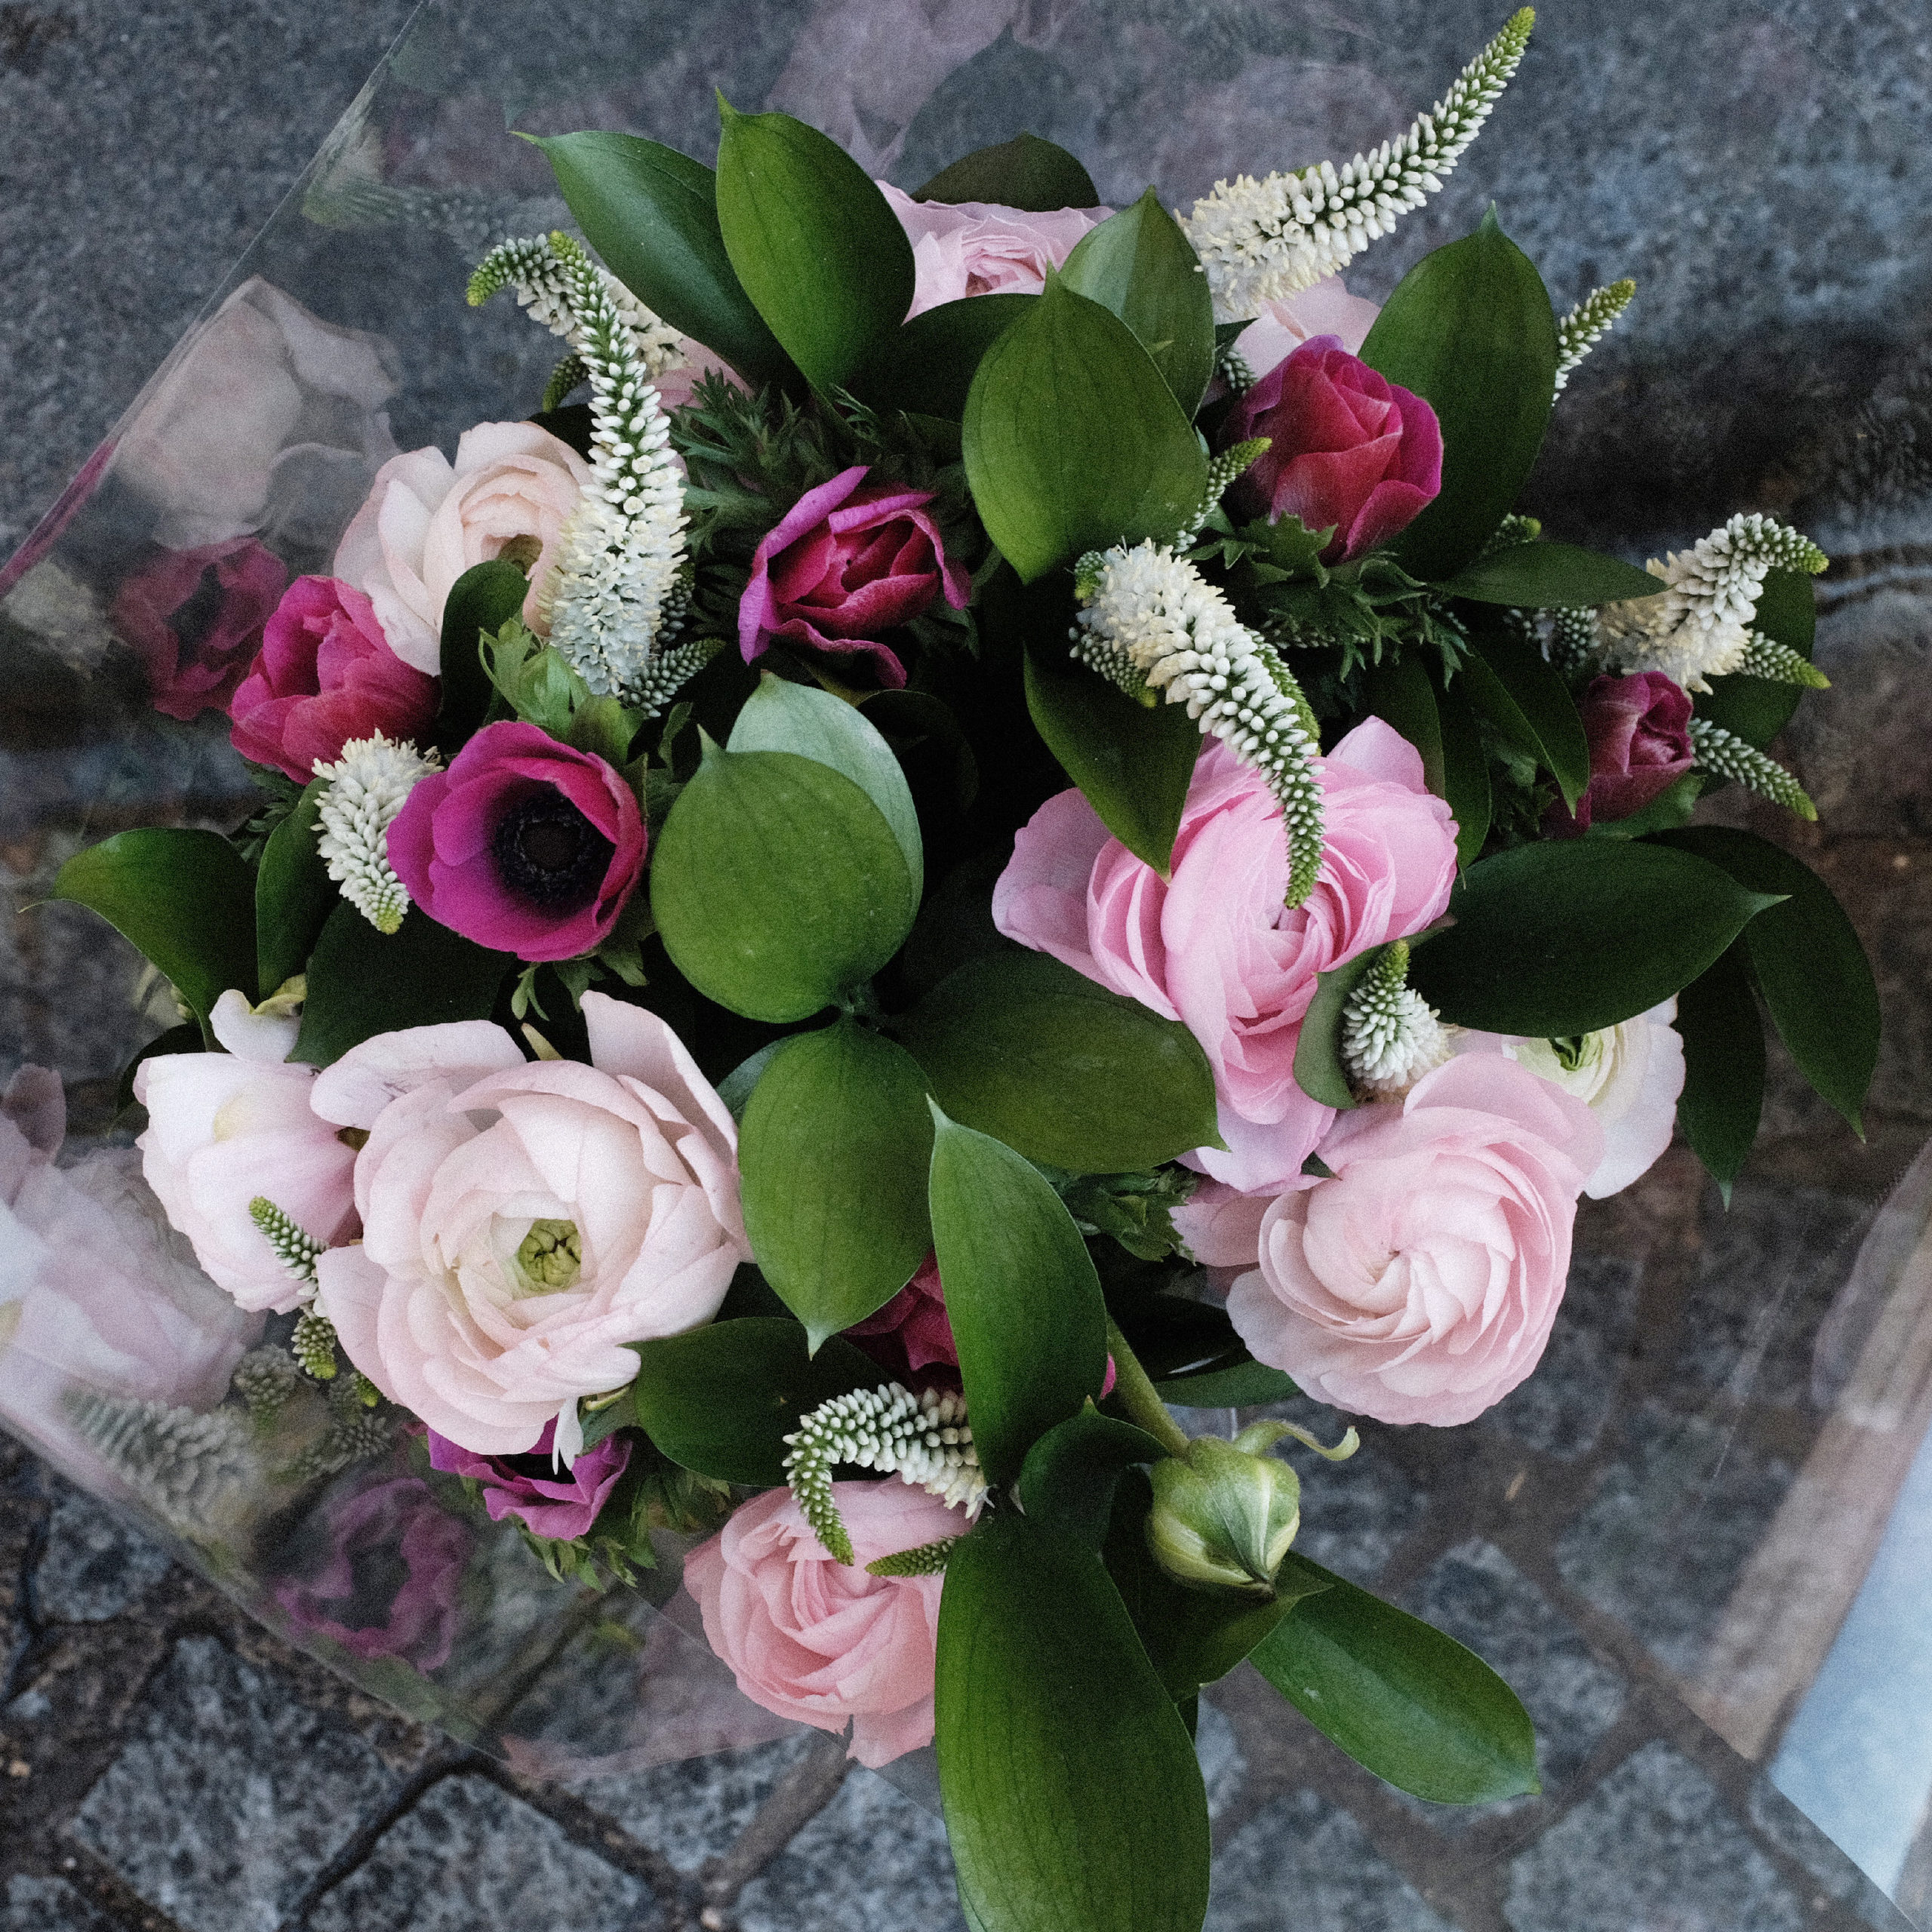 Composition de fleurs fraîches et emballage cello (renoncules roses, anémones roses, véronique blanche, ruscus), valeur 30€